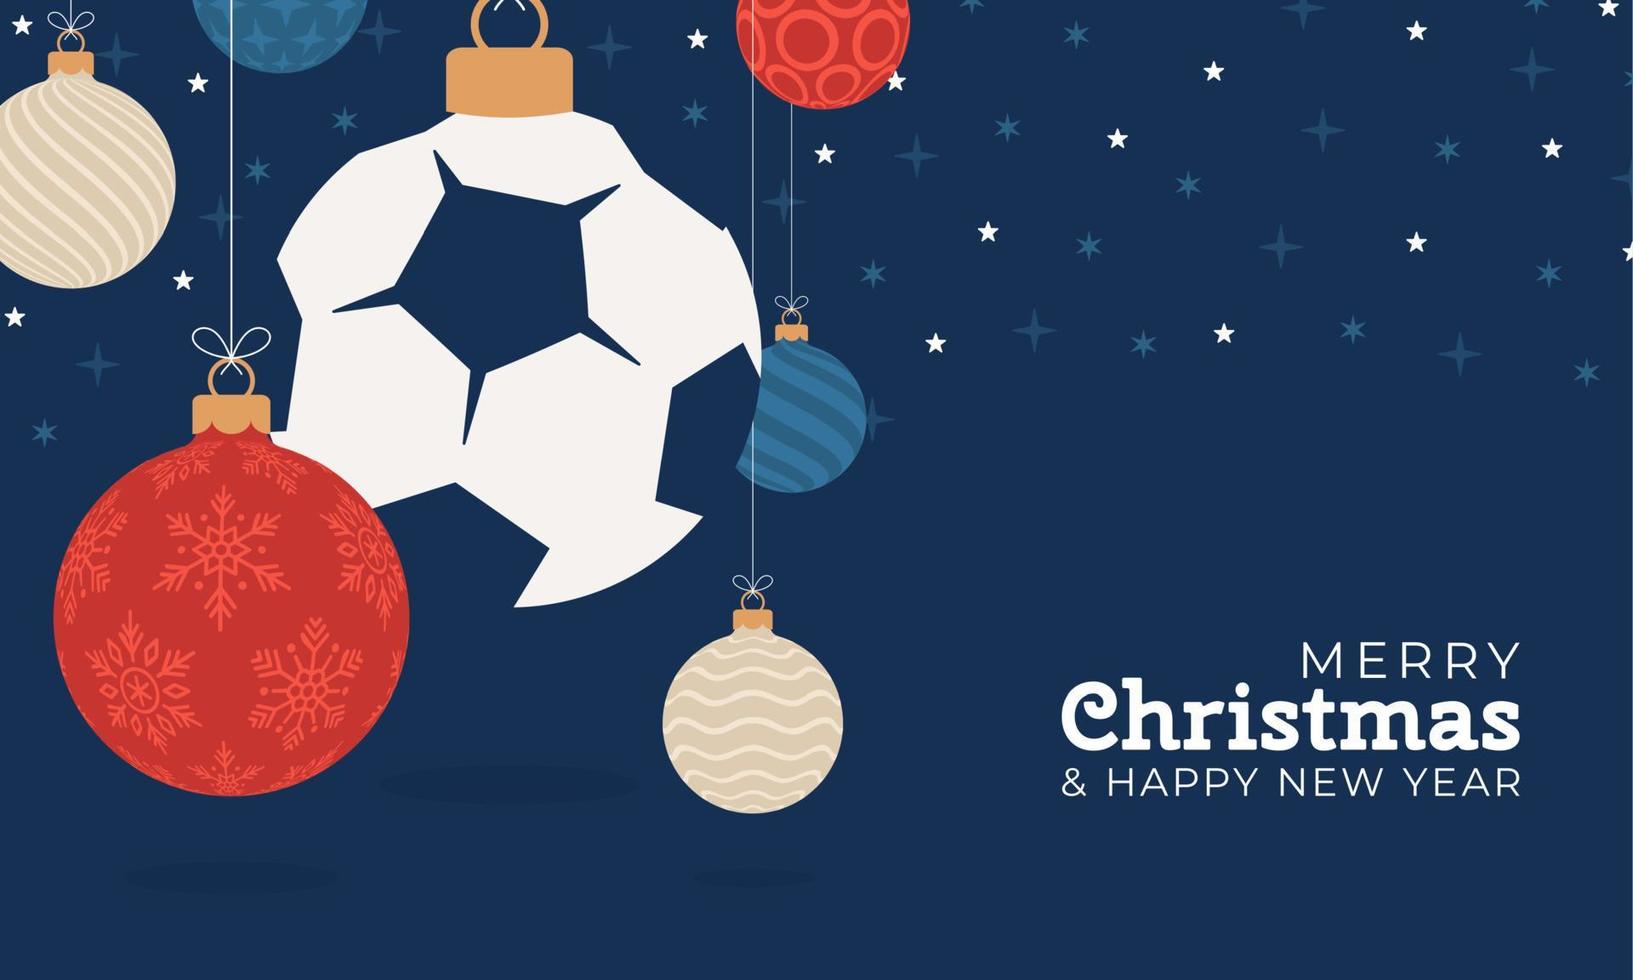 tarjeta de felicitación de navidad de fútbol. Feliz navidad y próspero